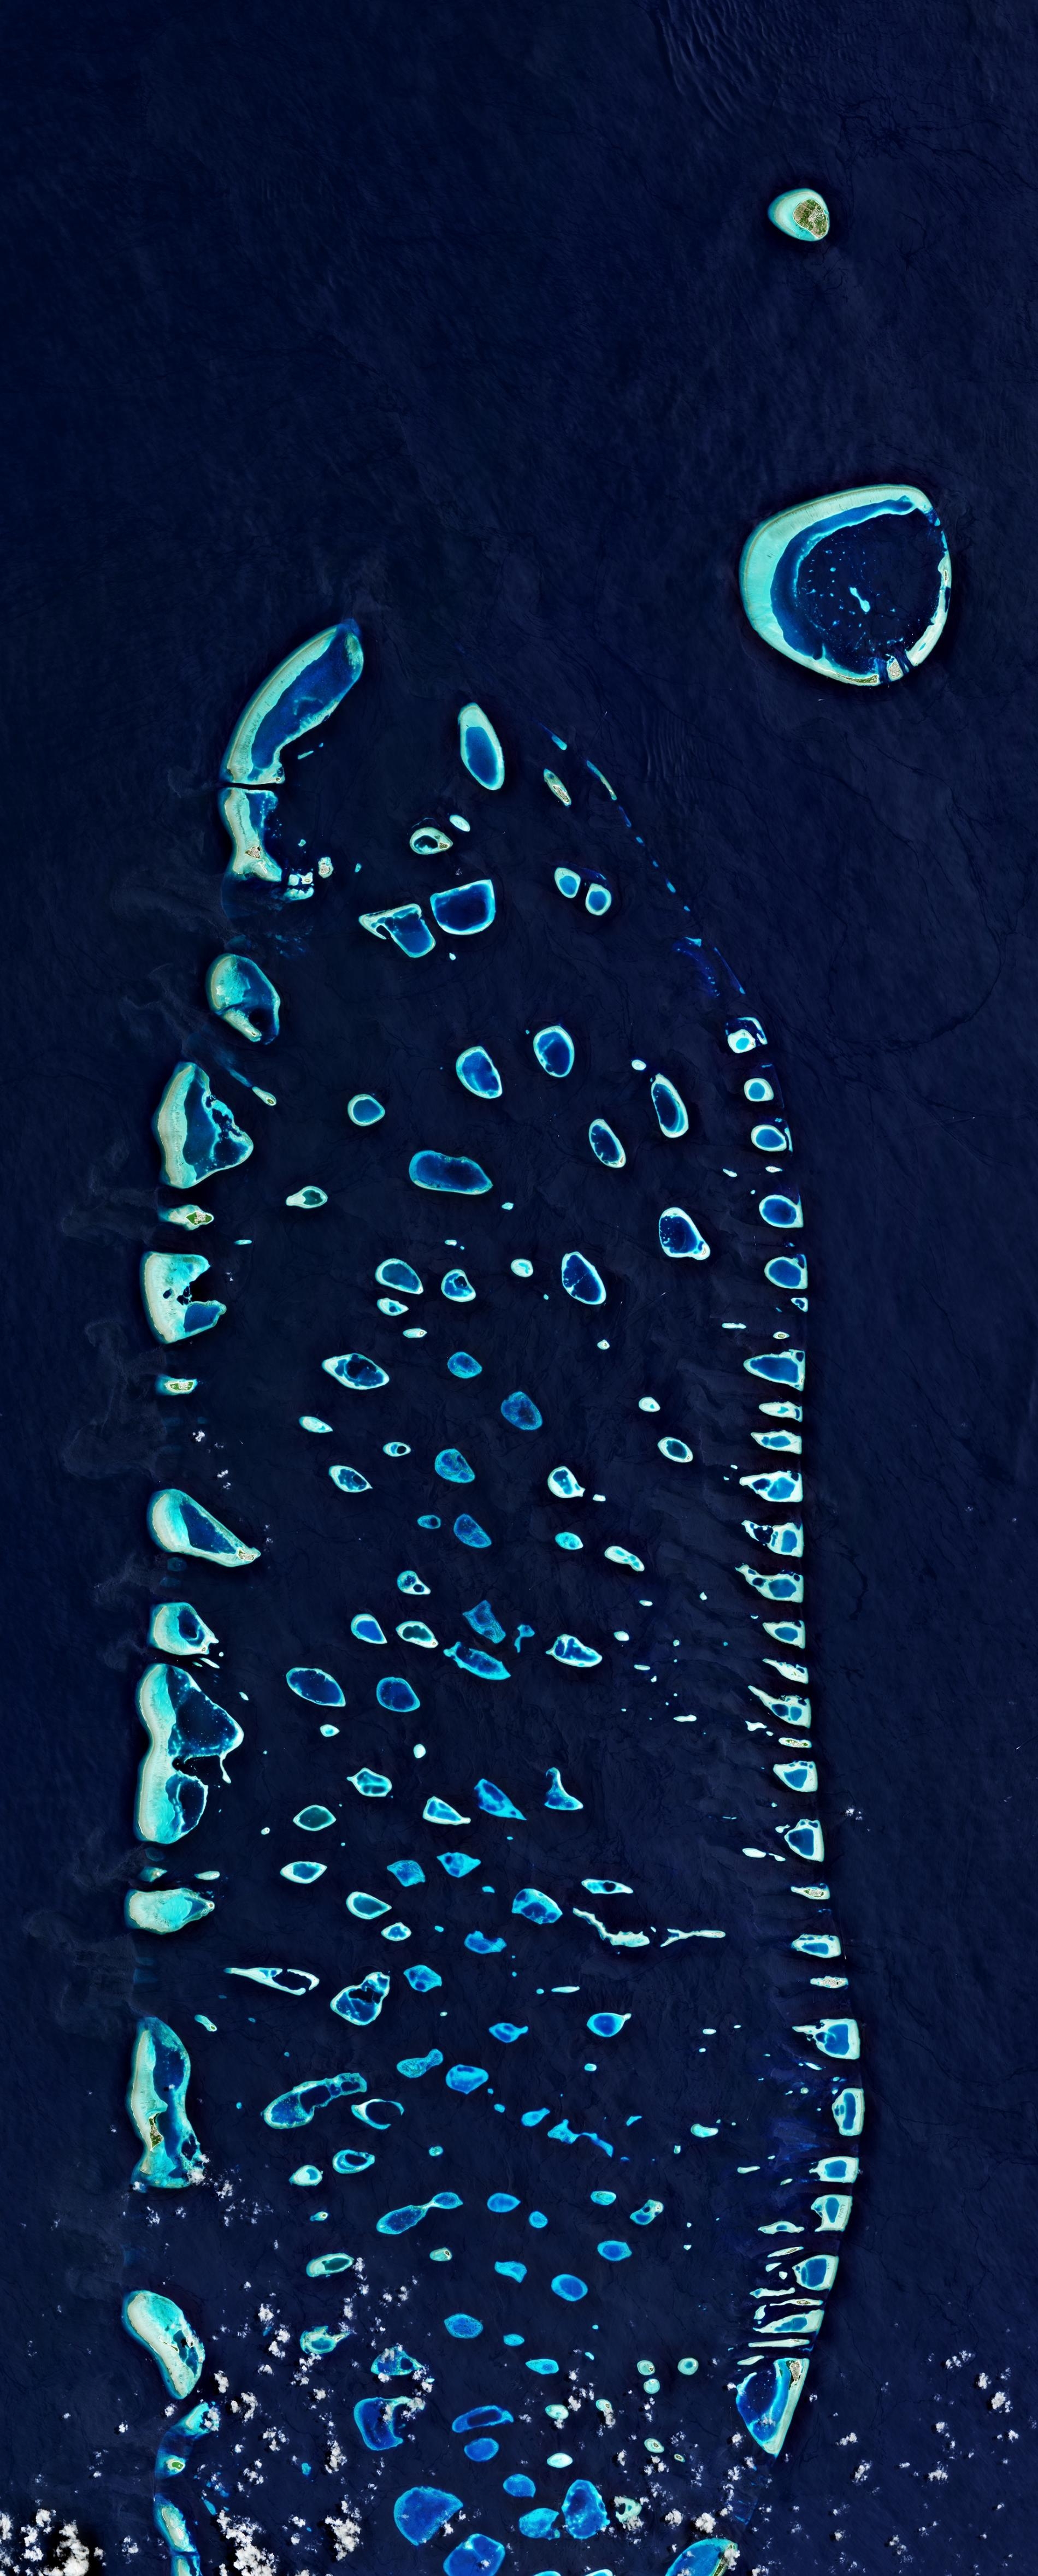 馬爾地夫由1192座小島組成，照片為從上空俯瞰部分地區的景象。這個小小島國的灘沙與離岸水域中也有全世界最高濃度的微塑膠。PHOTOGRAPH COURTESY EUROPEAN SPACE AGENCY